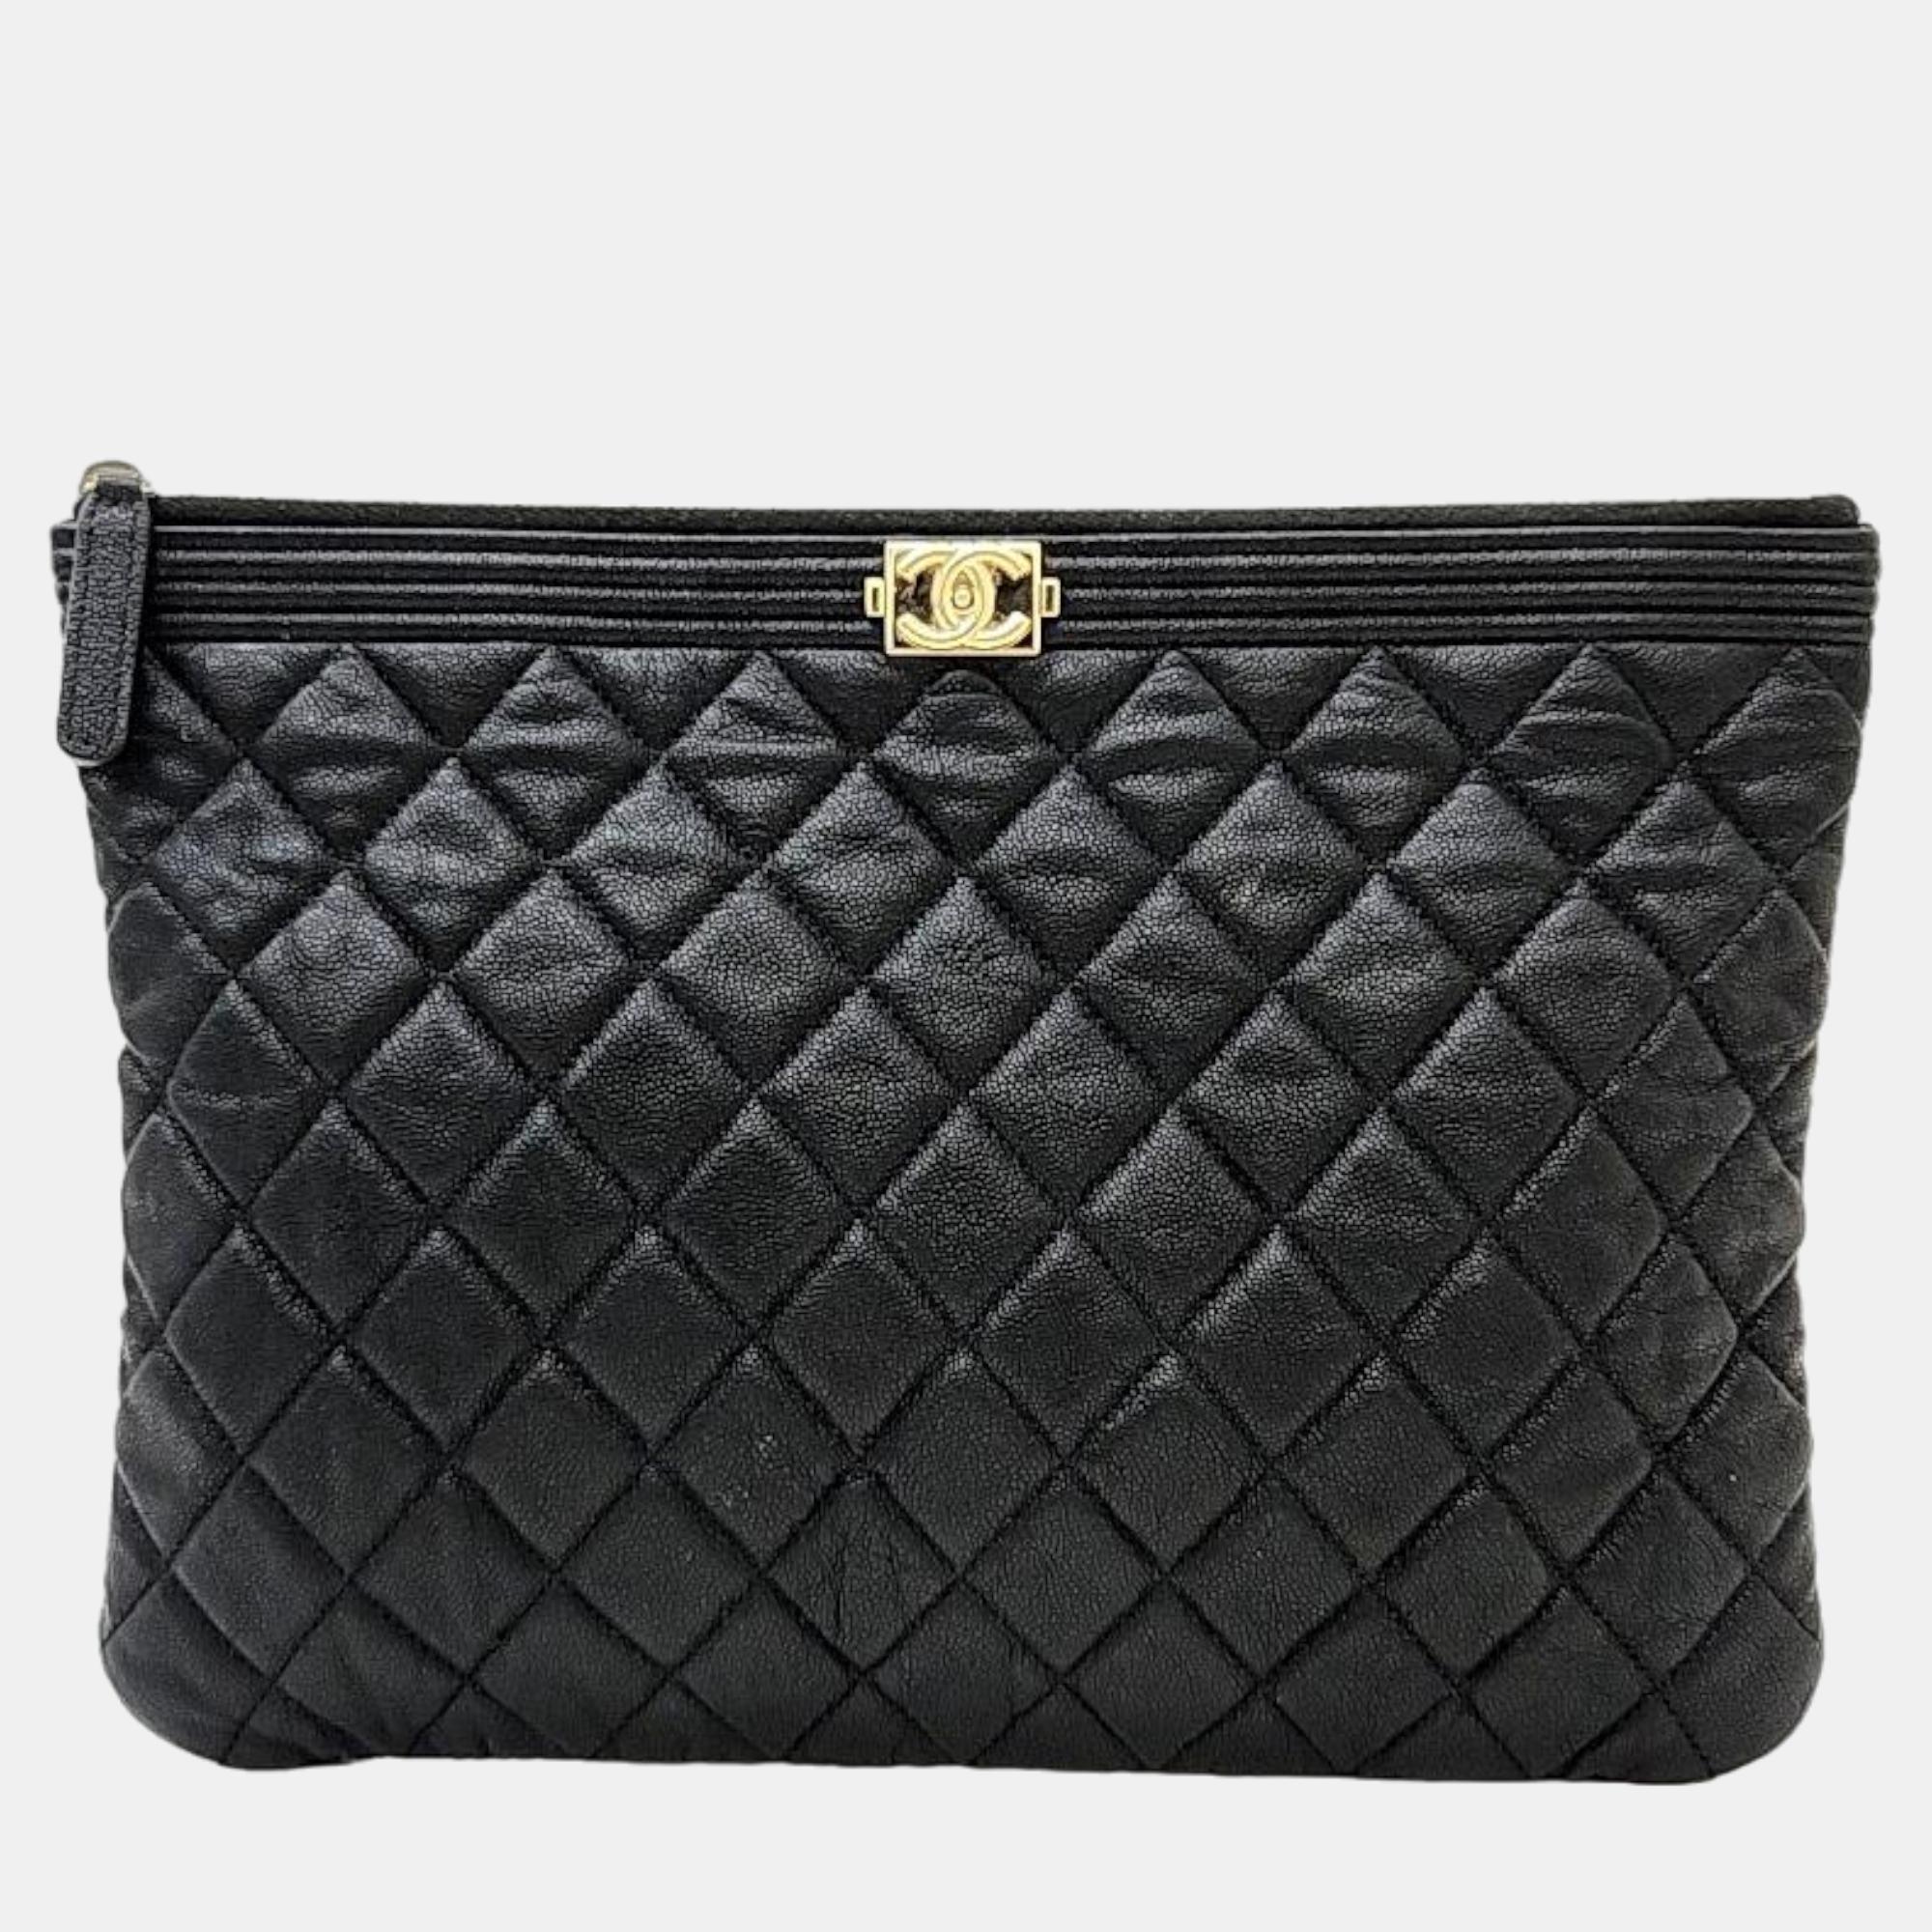 Chanel black caviar leather o case medium quilted boy clutch bag